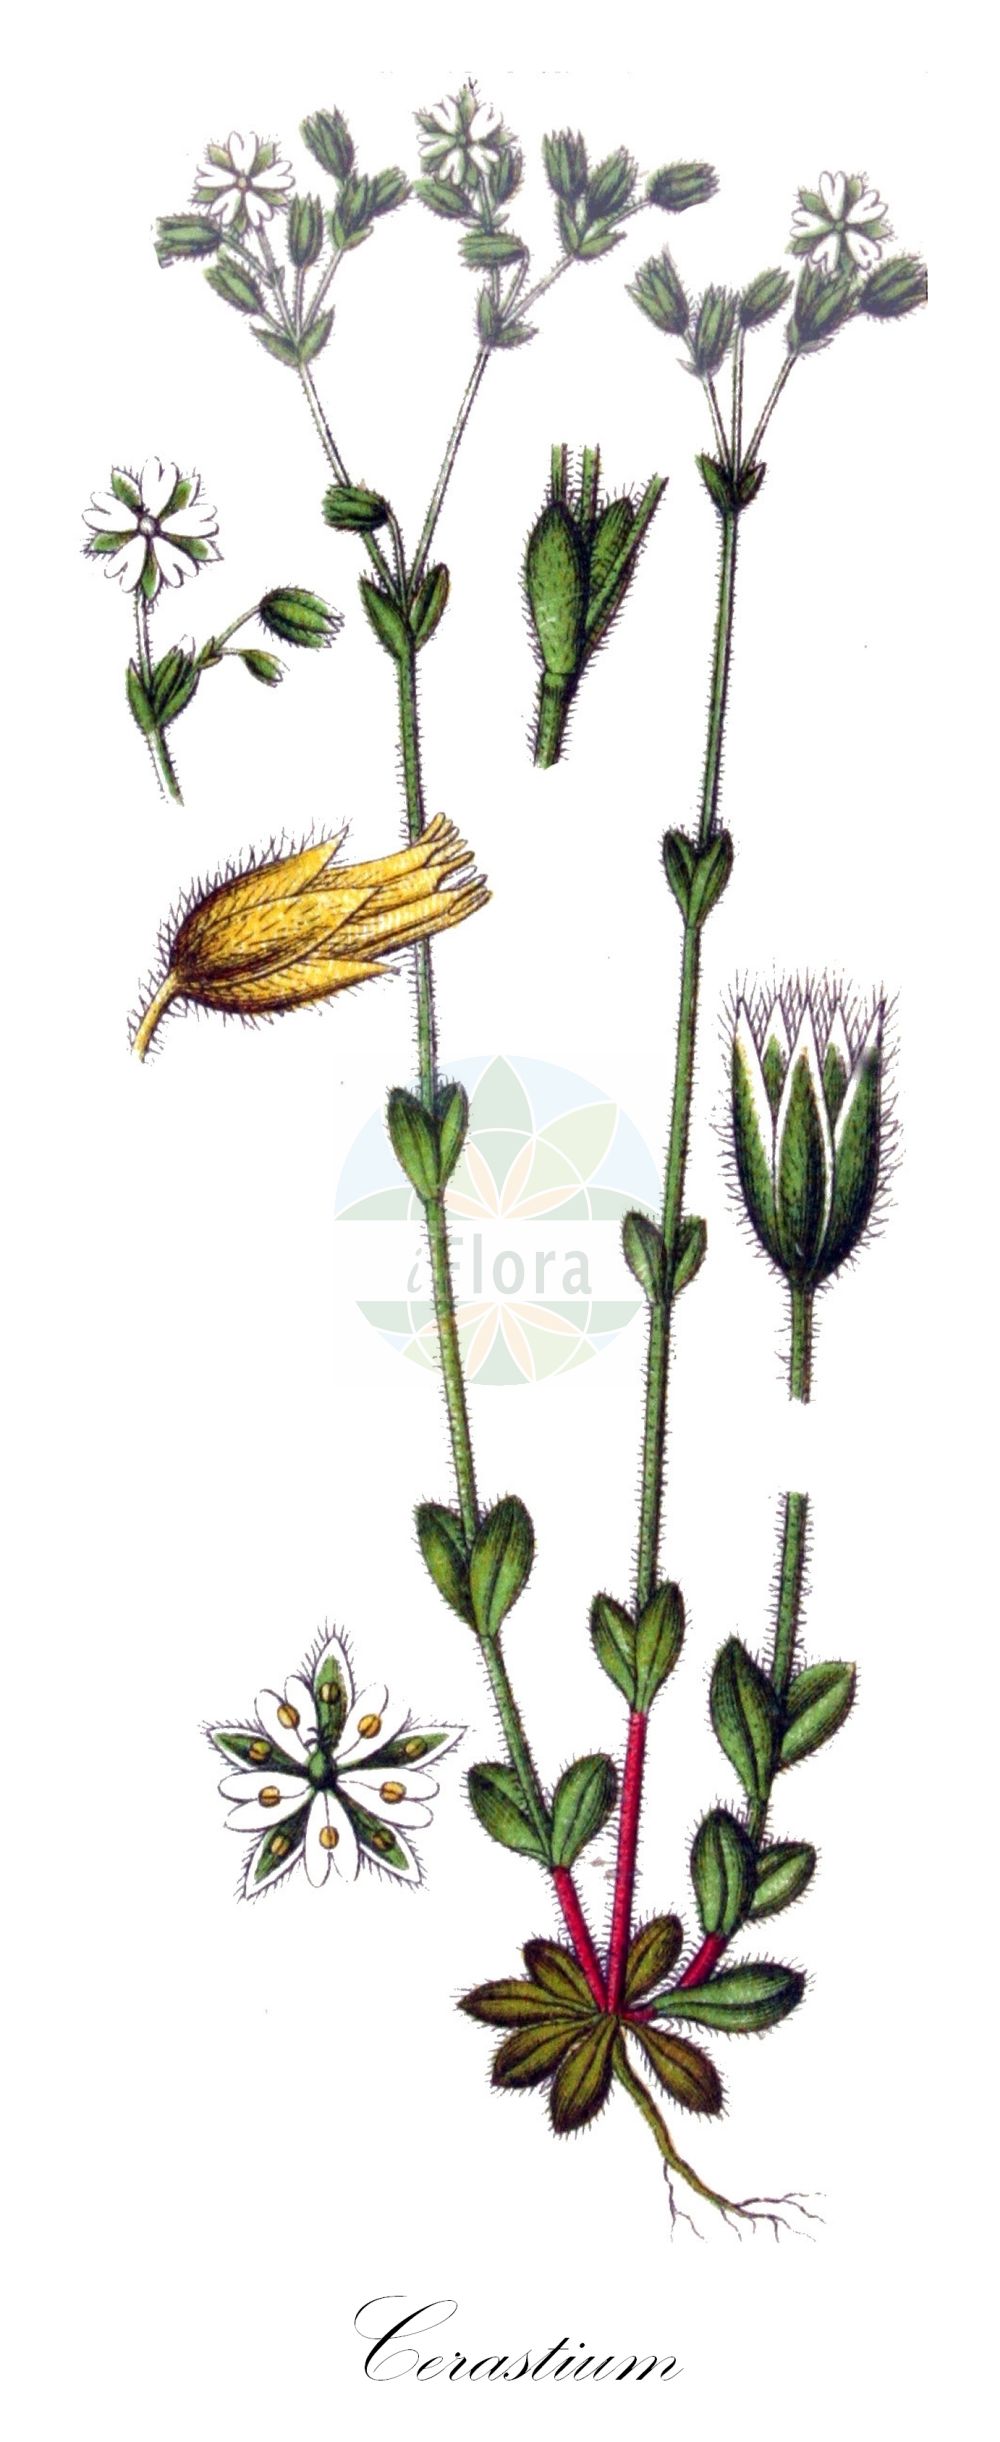 Historische Abbildung von Cerastium brachypetalum (Kleinblütiges Hornkraut - Grey Mouse-ear). Das Bild zeigt Blatt, Bluete, Frucht und Same. ---- Historical Drawing of Cerastium brachypetalum (Kleinblütiges Hornkraut - Grey Mouse-ear). The image is showing leaf, flower, fruit and seed.(Cerastium brachypetalum,Kleinblütiges Hornkraut,Grey Mouse-ear,Cerastium brachycarpum,Cerastium brachypetalum,Cerastium strigosum,Kleinbluetiges Hornkraut,Baertiges Hornkraut,Grey Mouse-ear,Gray Chickweed,Grey Mouse-ear Chickweed,Cerastium,Hornkraut,Chickweed,Caryophyllaceae,Nelkengewächse,Pink family,Blatt,Bluete,Frucht,Same,leaf,flower,fruit,seed,Sturm (1796f))